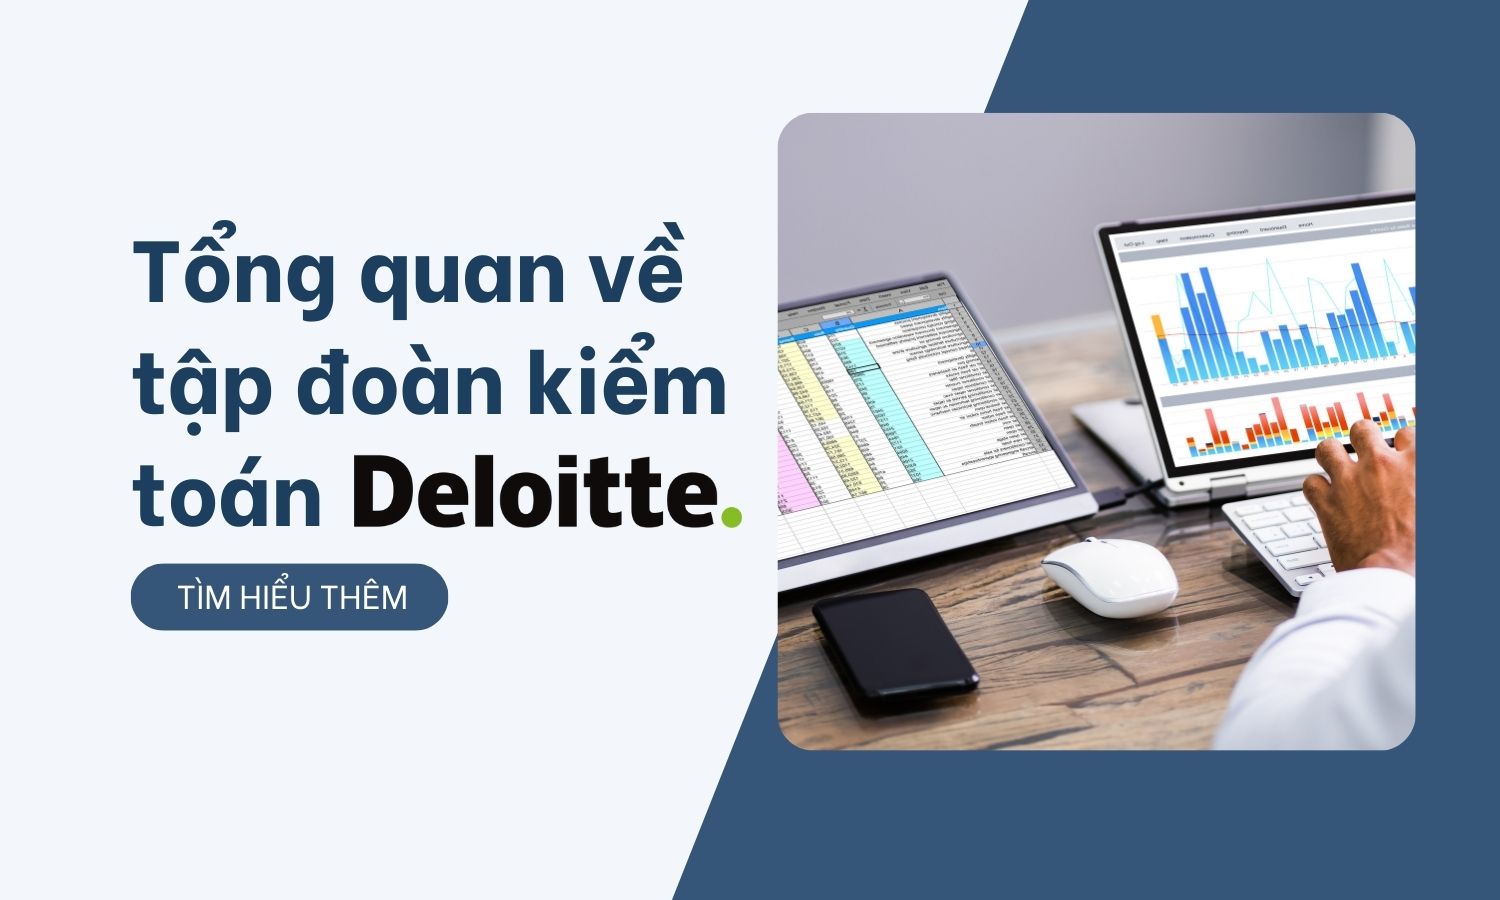 Tổng quan tập đoàn kiểm toán Deloitte dành cho sinh viên!